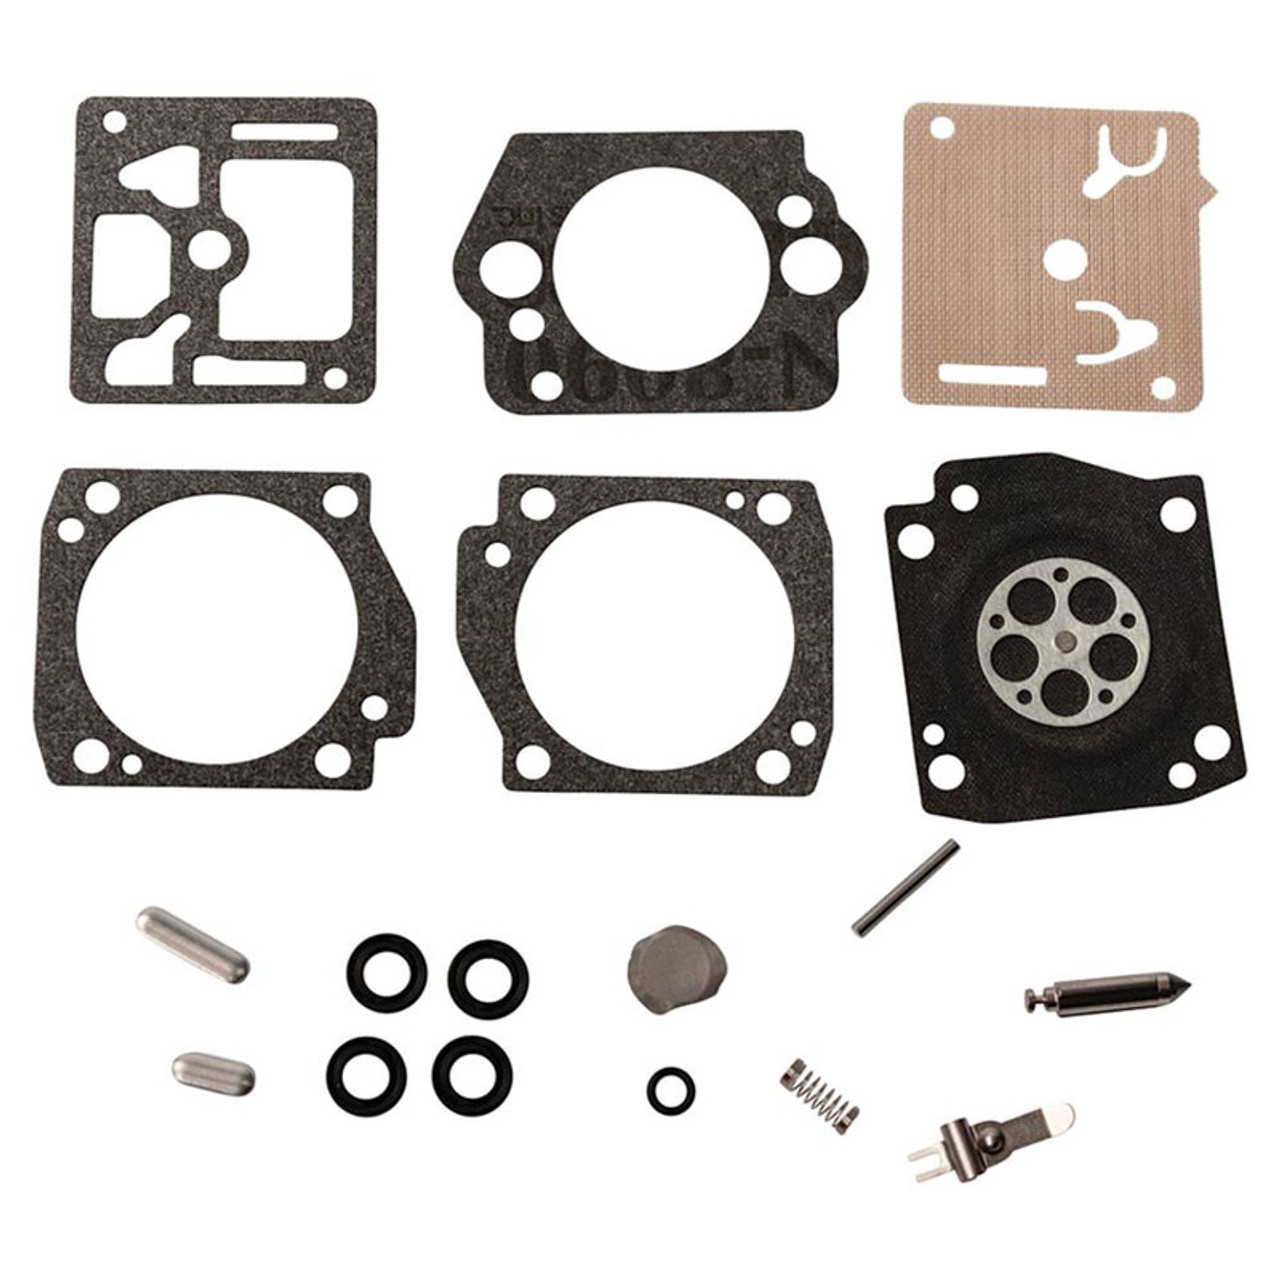 Carburetor Rebuild Kit for Husqvarna K750, K760, 506410003, 506410004